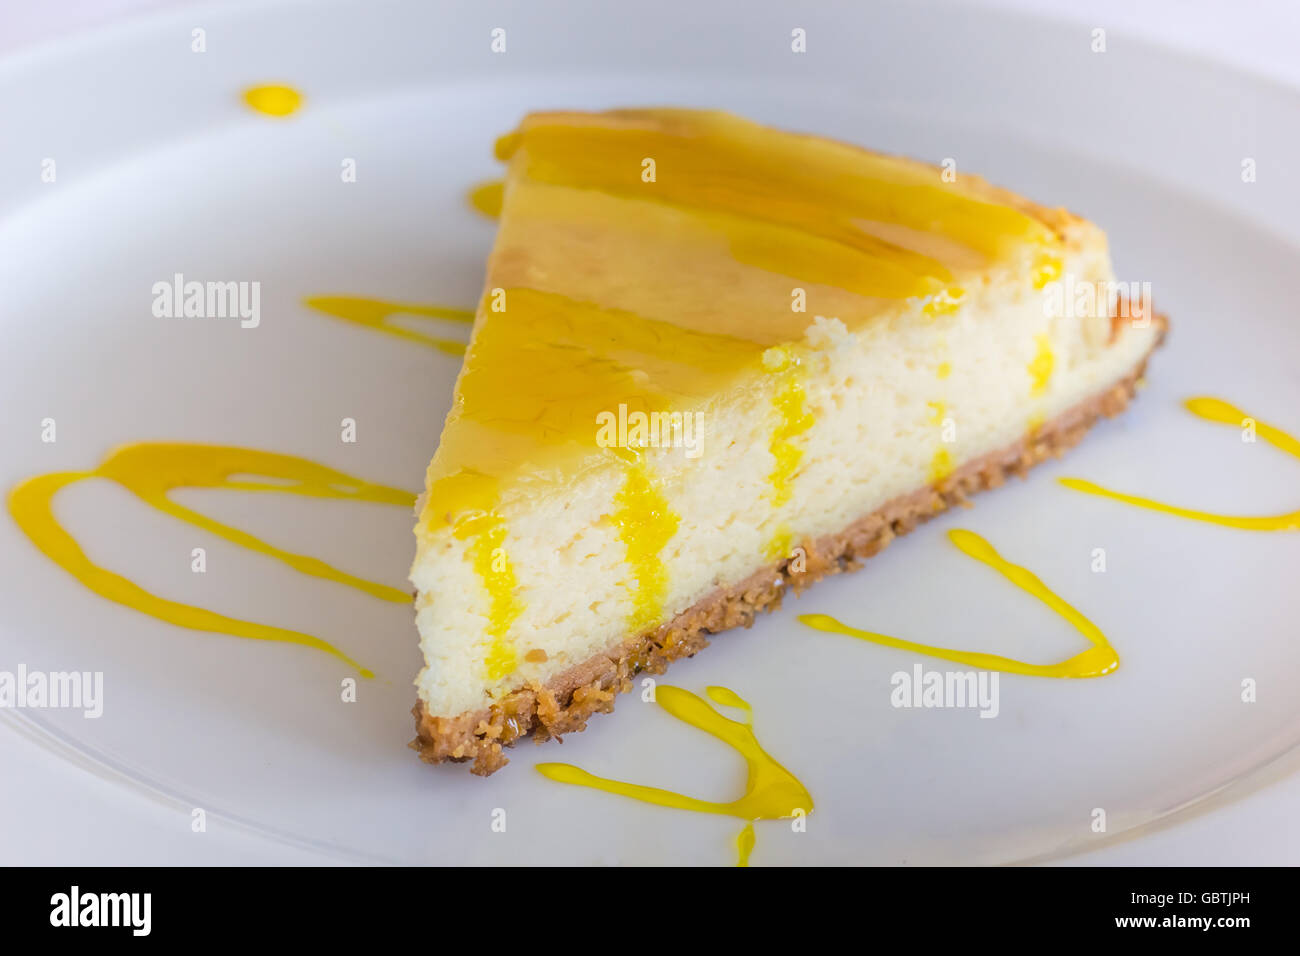 Gâteau au fromage au citron avec la sauce servi sur une plaque blanche Banque D'Images